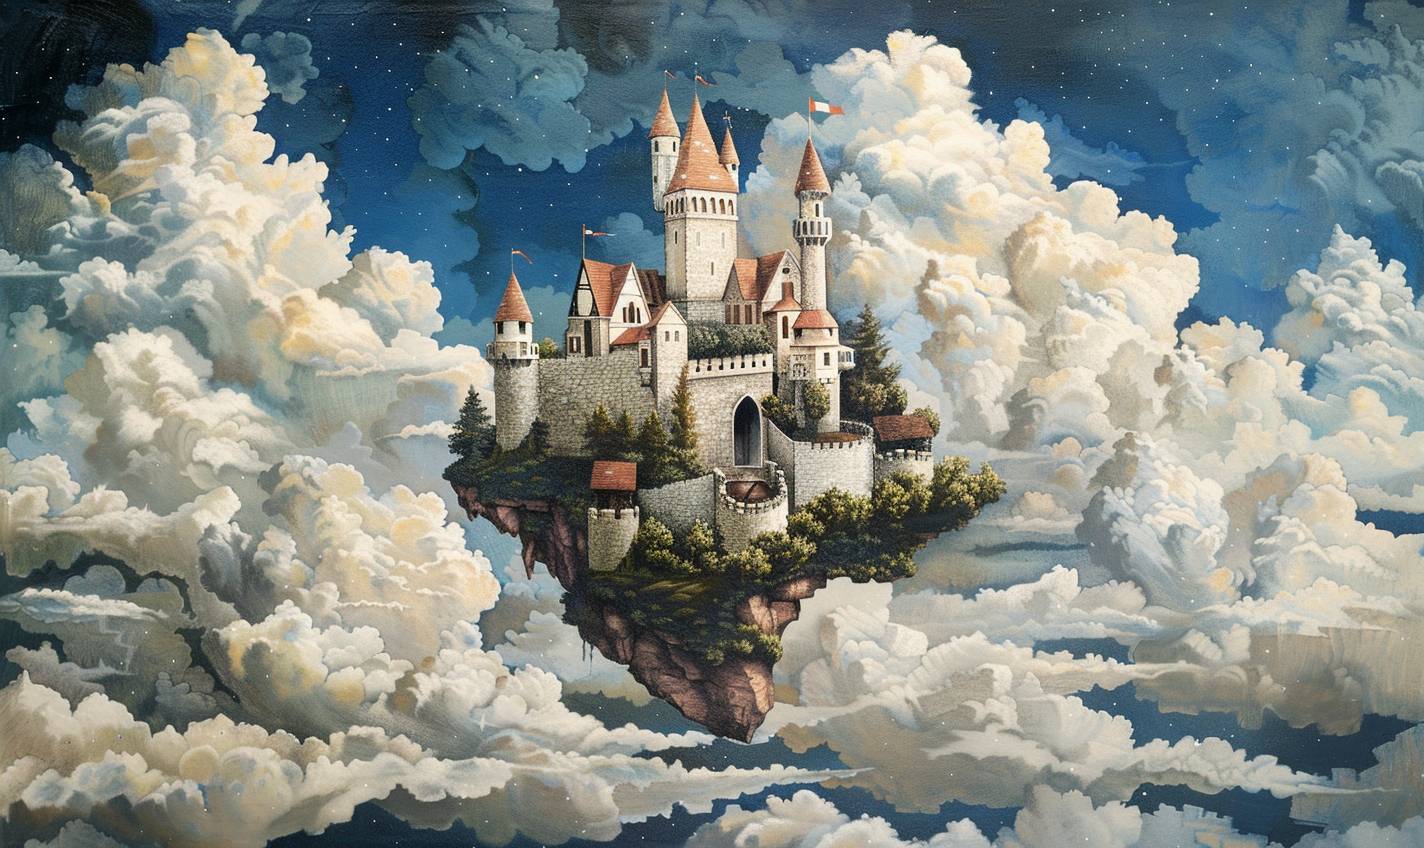 グランドマ・モーゼスのスタイルで、雲の中の童話城